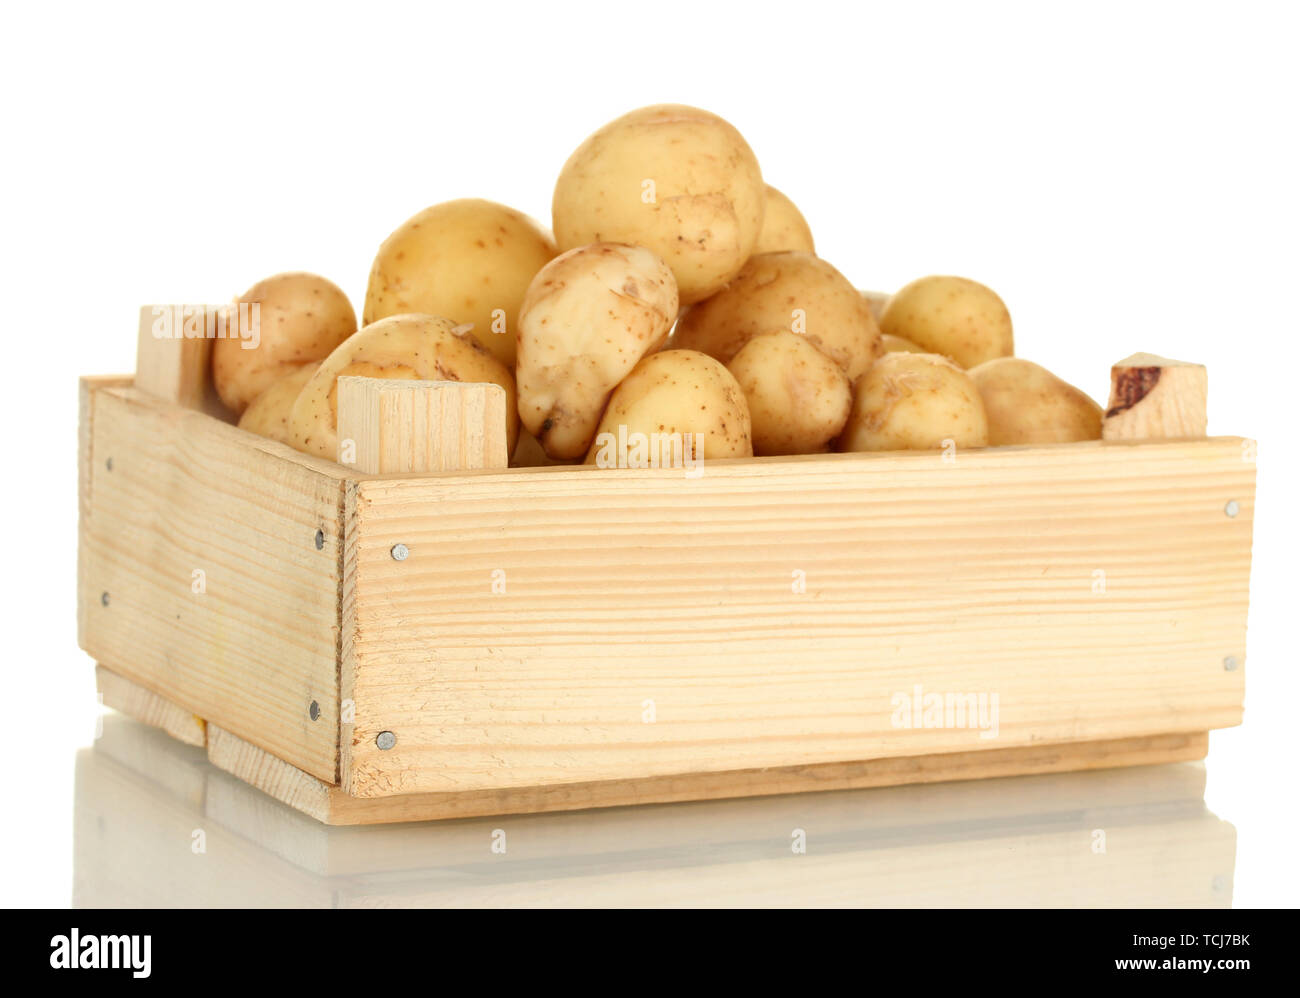 Les jeunes pommes de terre dans une boîte en bois isolé sur blanc close-up Banque D'Images